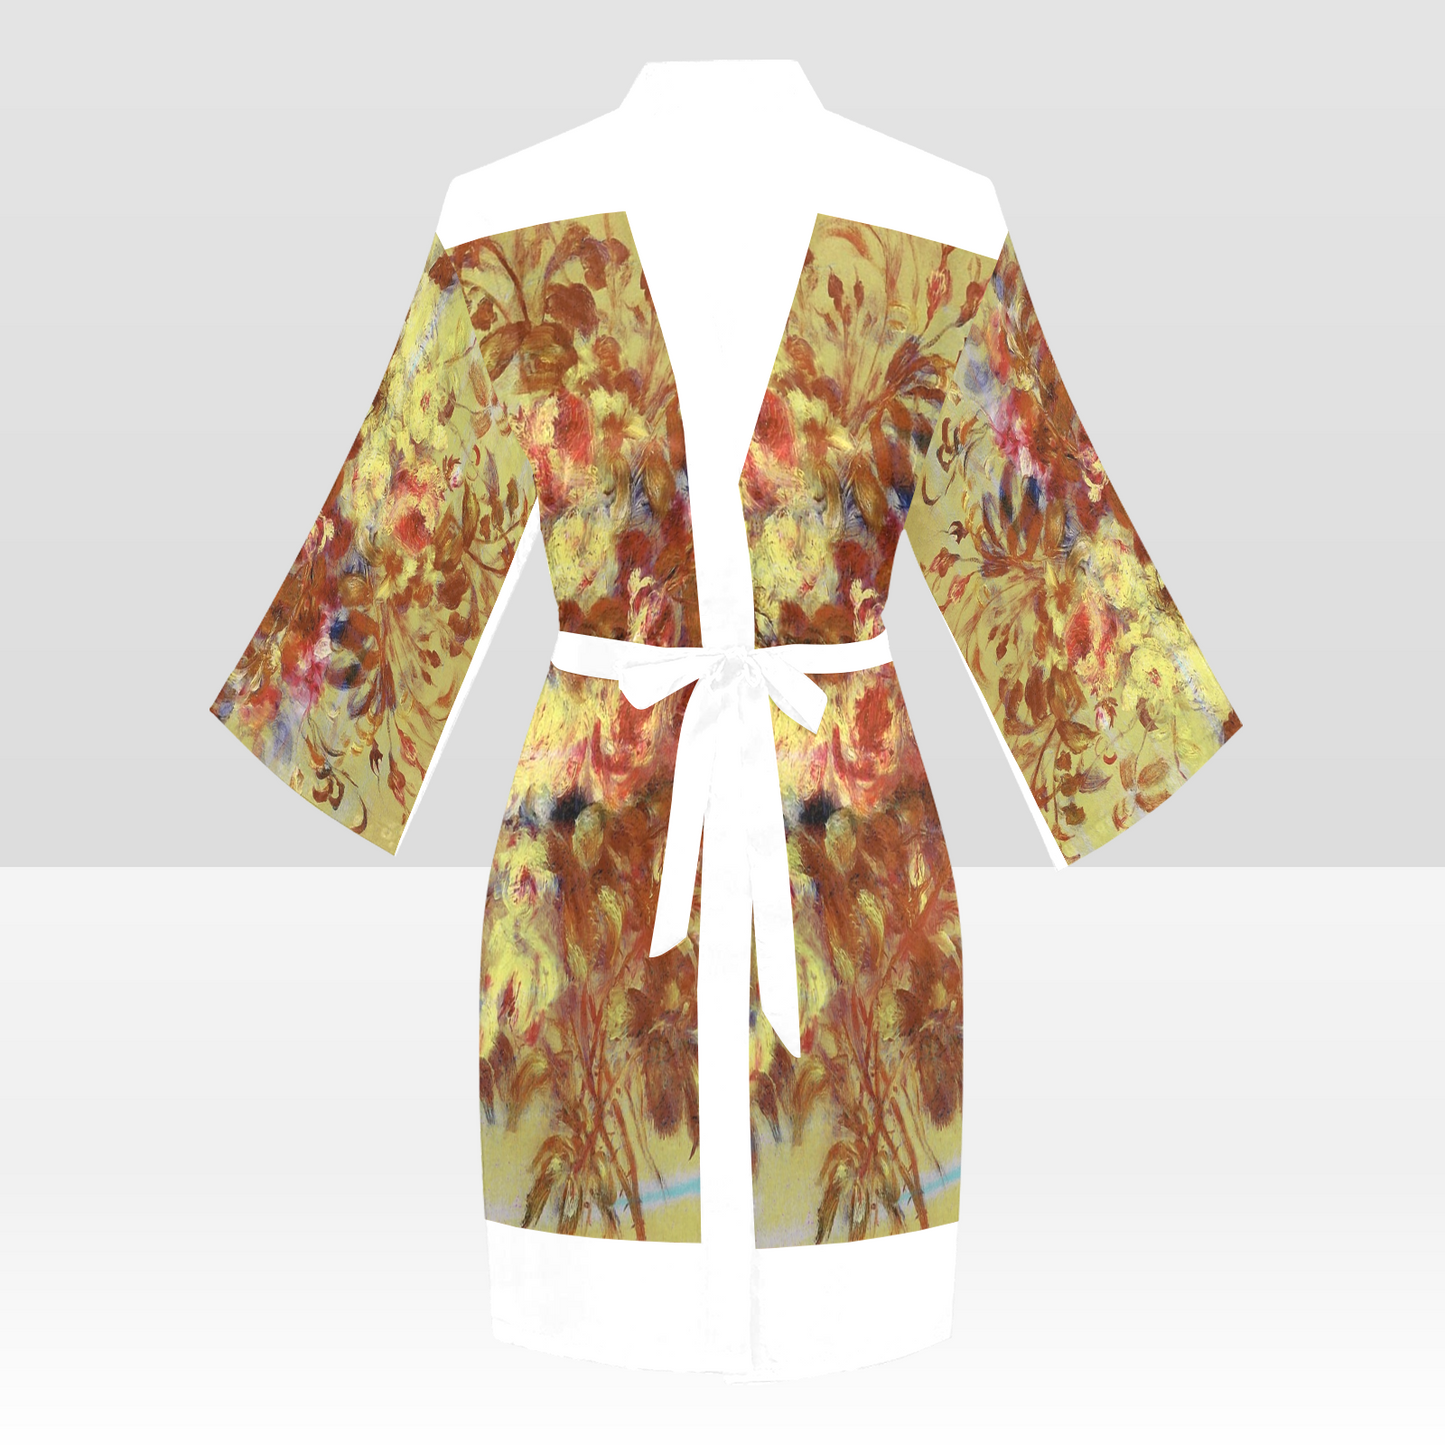 Vintage Floral Kimono Robe, Black or White Trim, Sizes XS to 2XL, Design 11